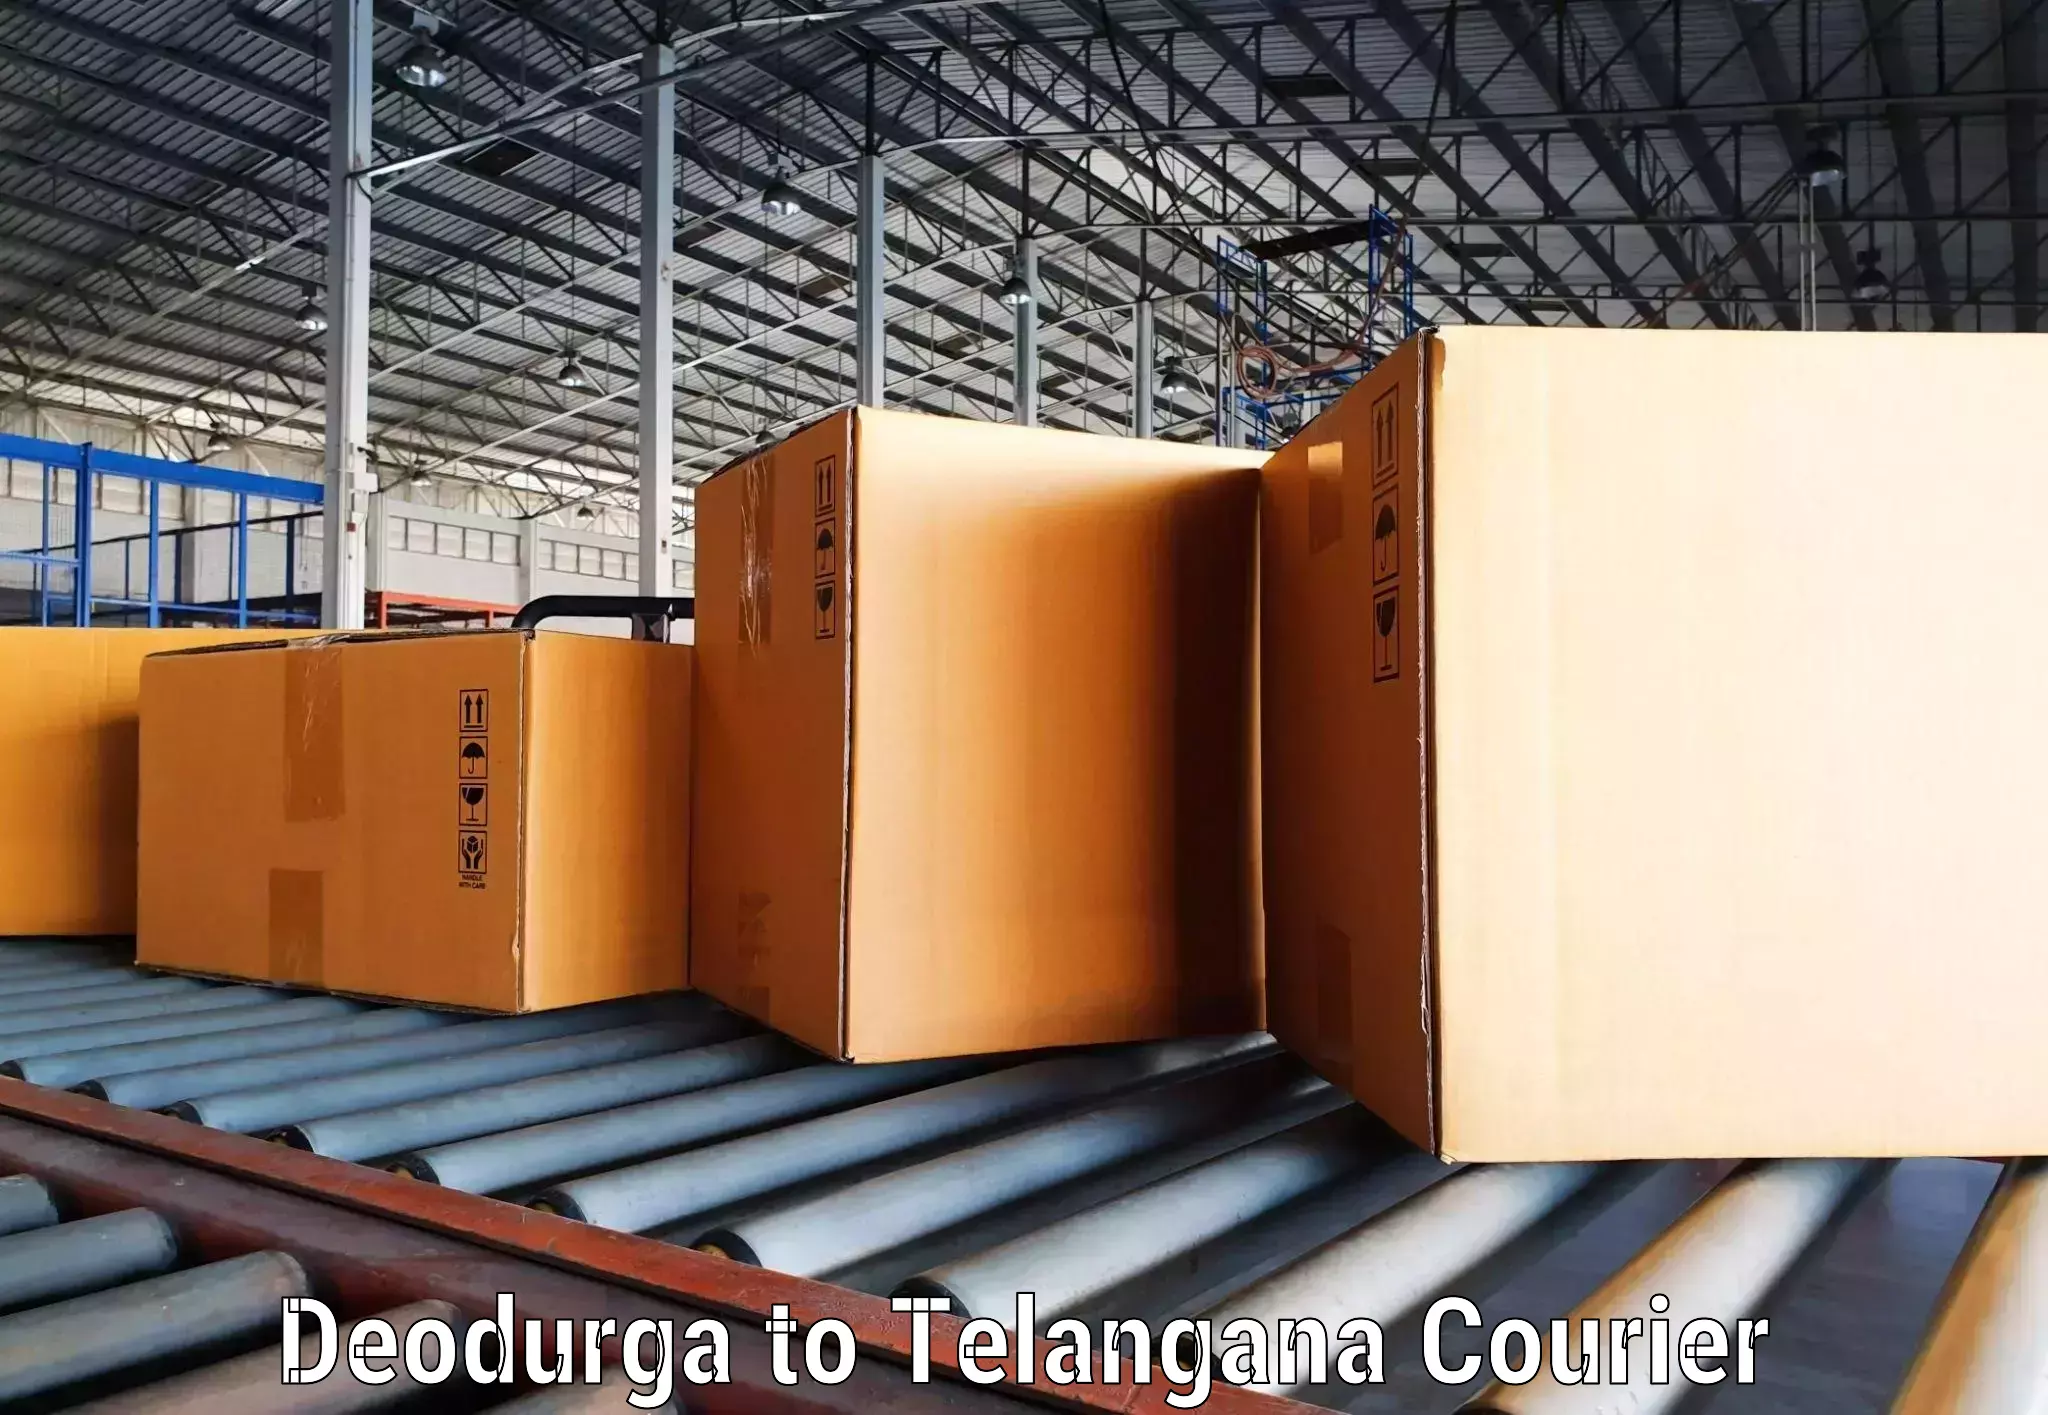 Urgent courier needs Deodurga to Tadvai